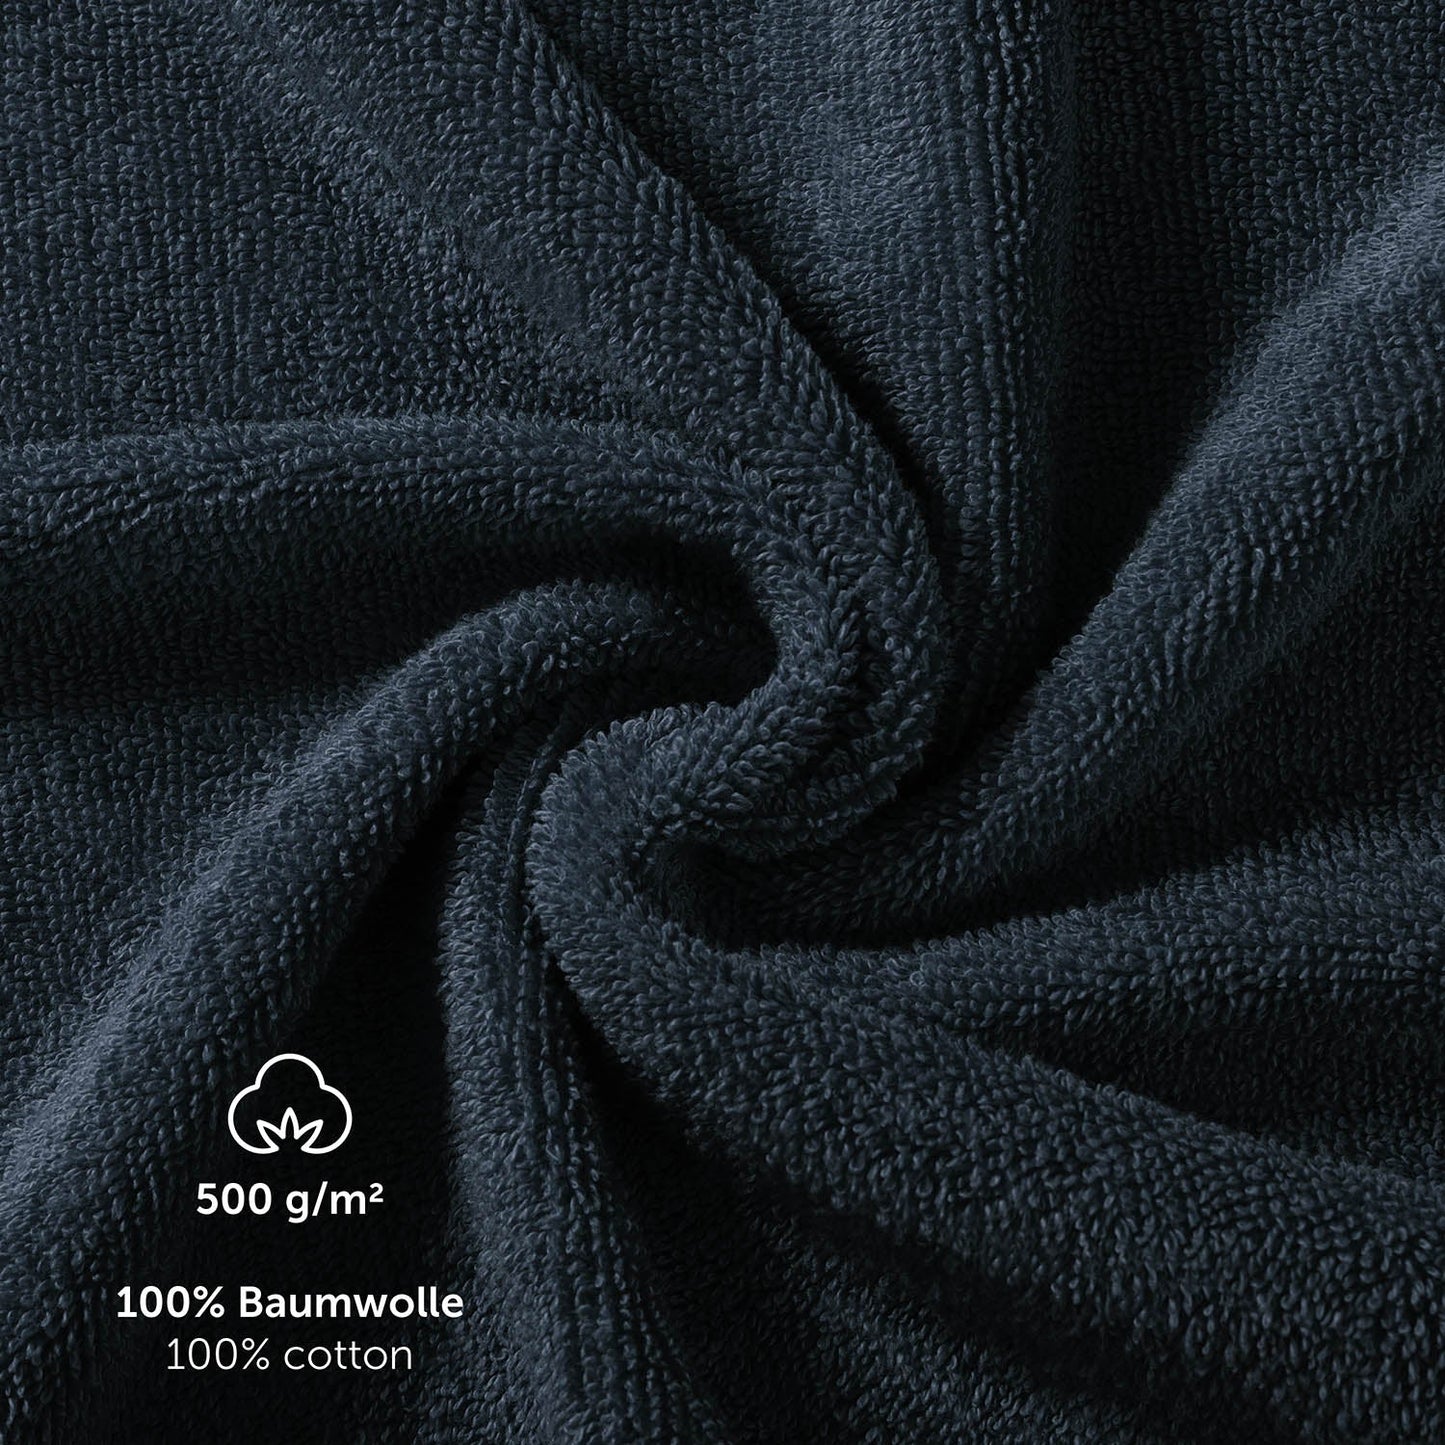 Detailaufnahme der Textur eines Handtuchs mit Angaben zu Material und Gewicht in Weiß 500 g/m 100% Baumwolle 100% cotton